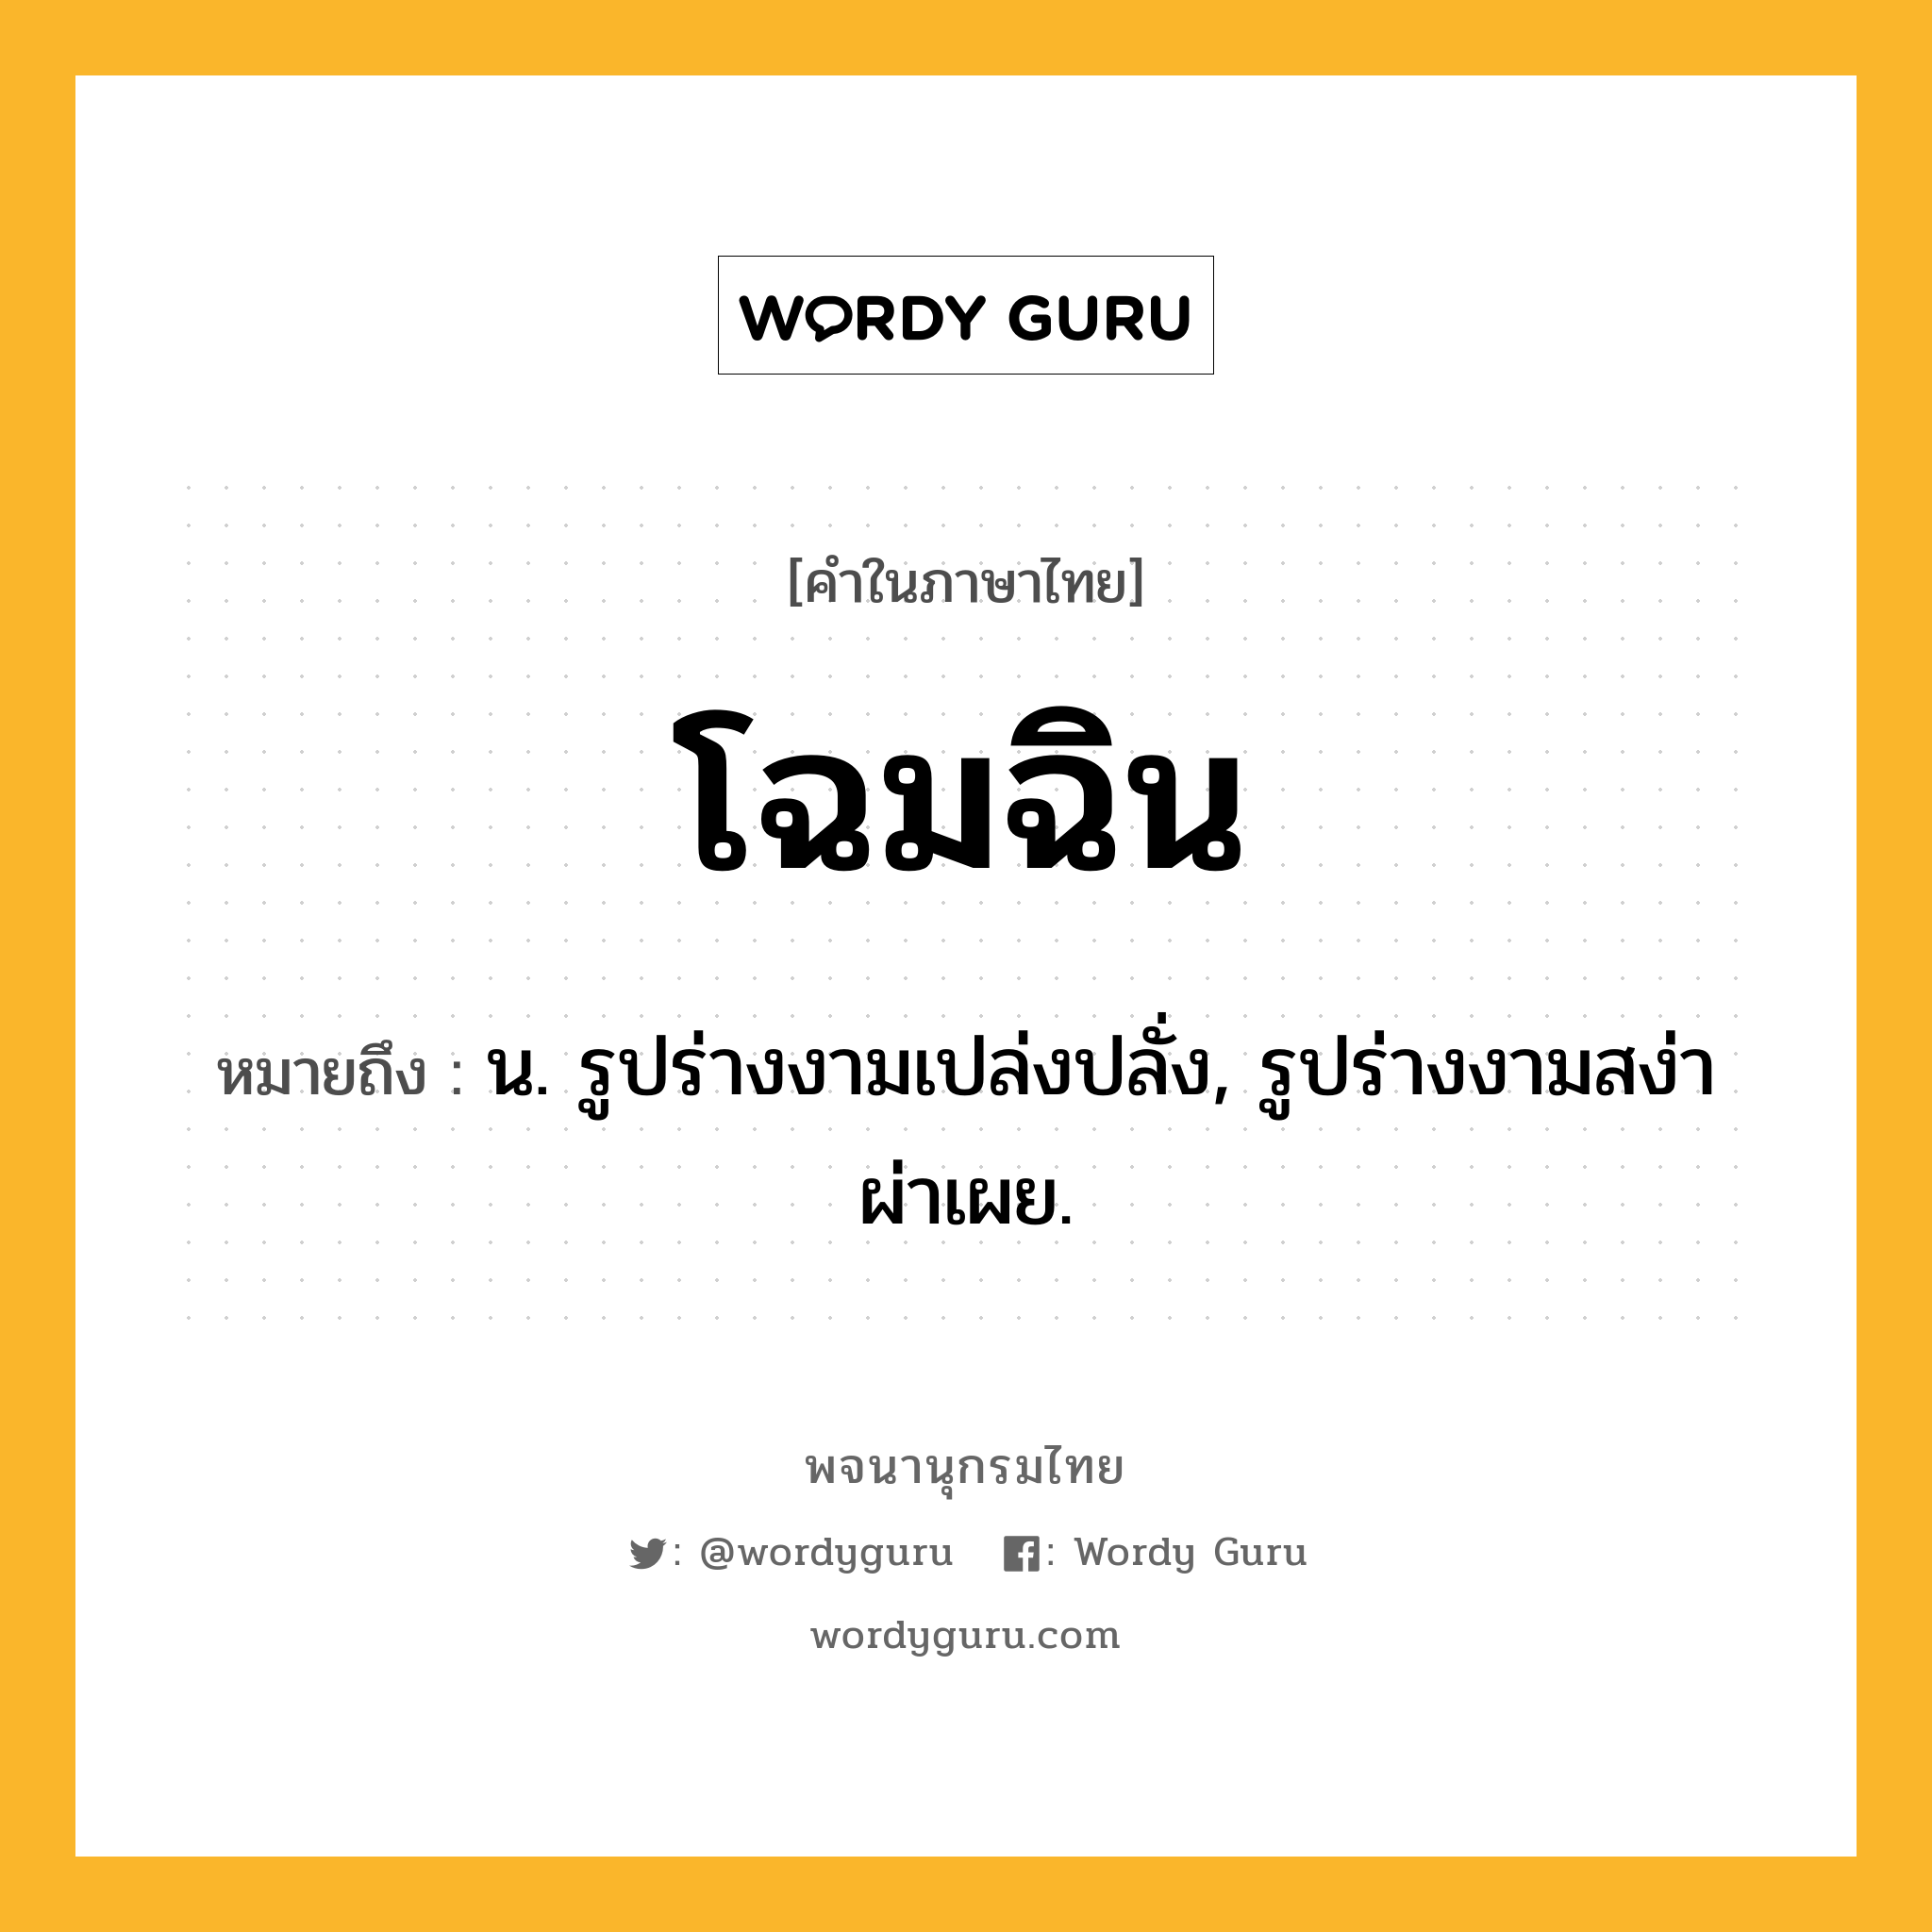 โฉมฉิน หมายถึงอะไร?, คำในภาษาไทย โฉมฉิน หมายถึง น. รูปร่างงามเปล่งปลั่ง, รูปร่างงามสง่าผ่าเผย.